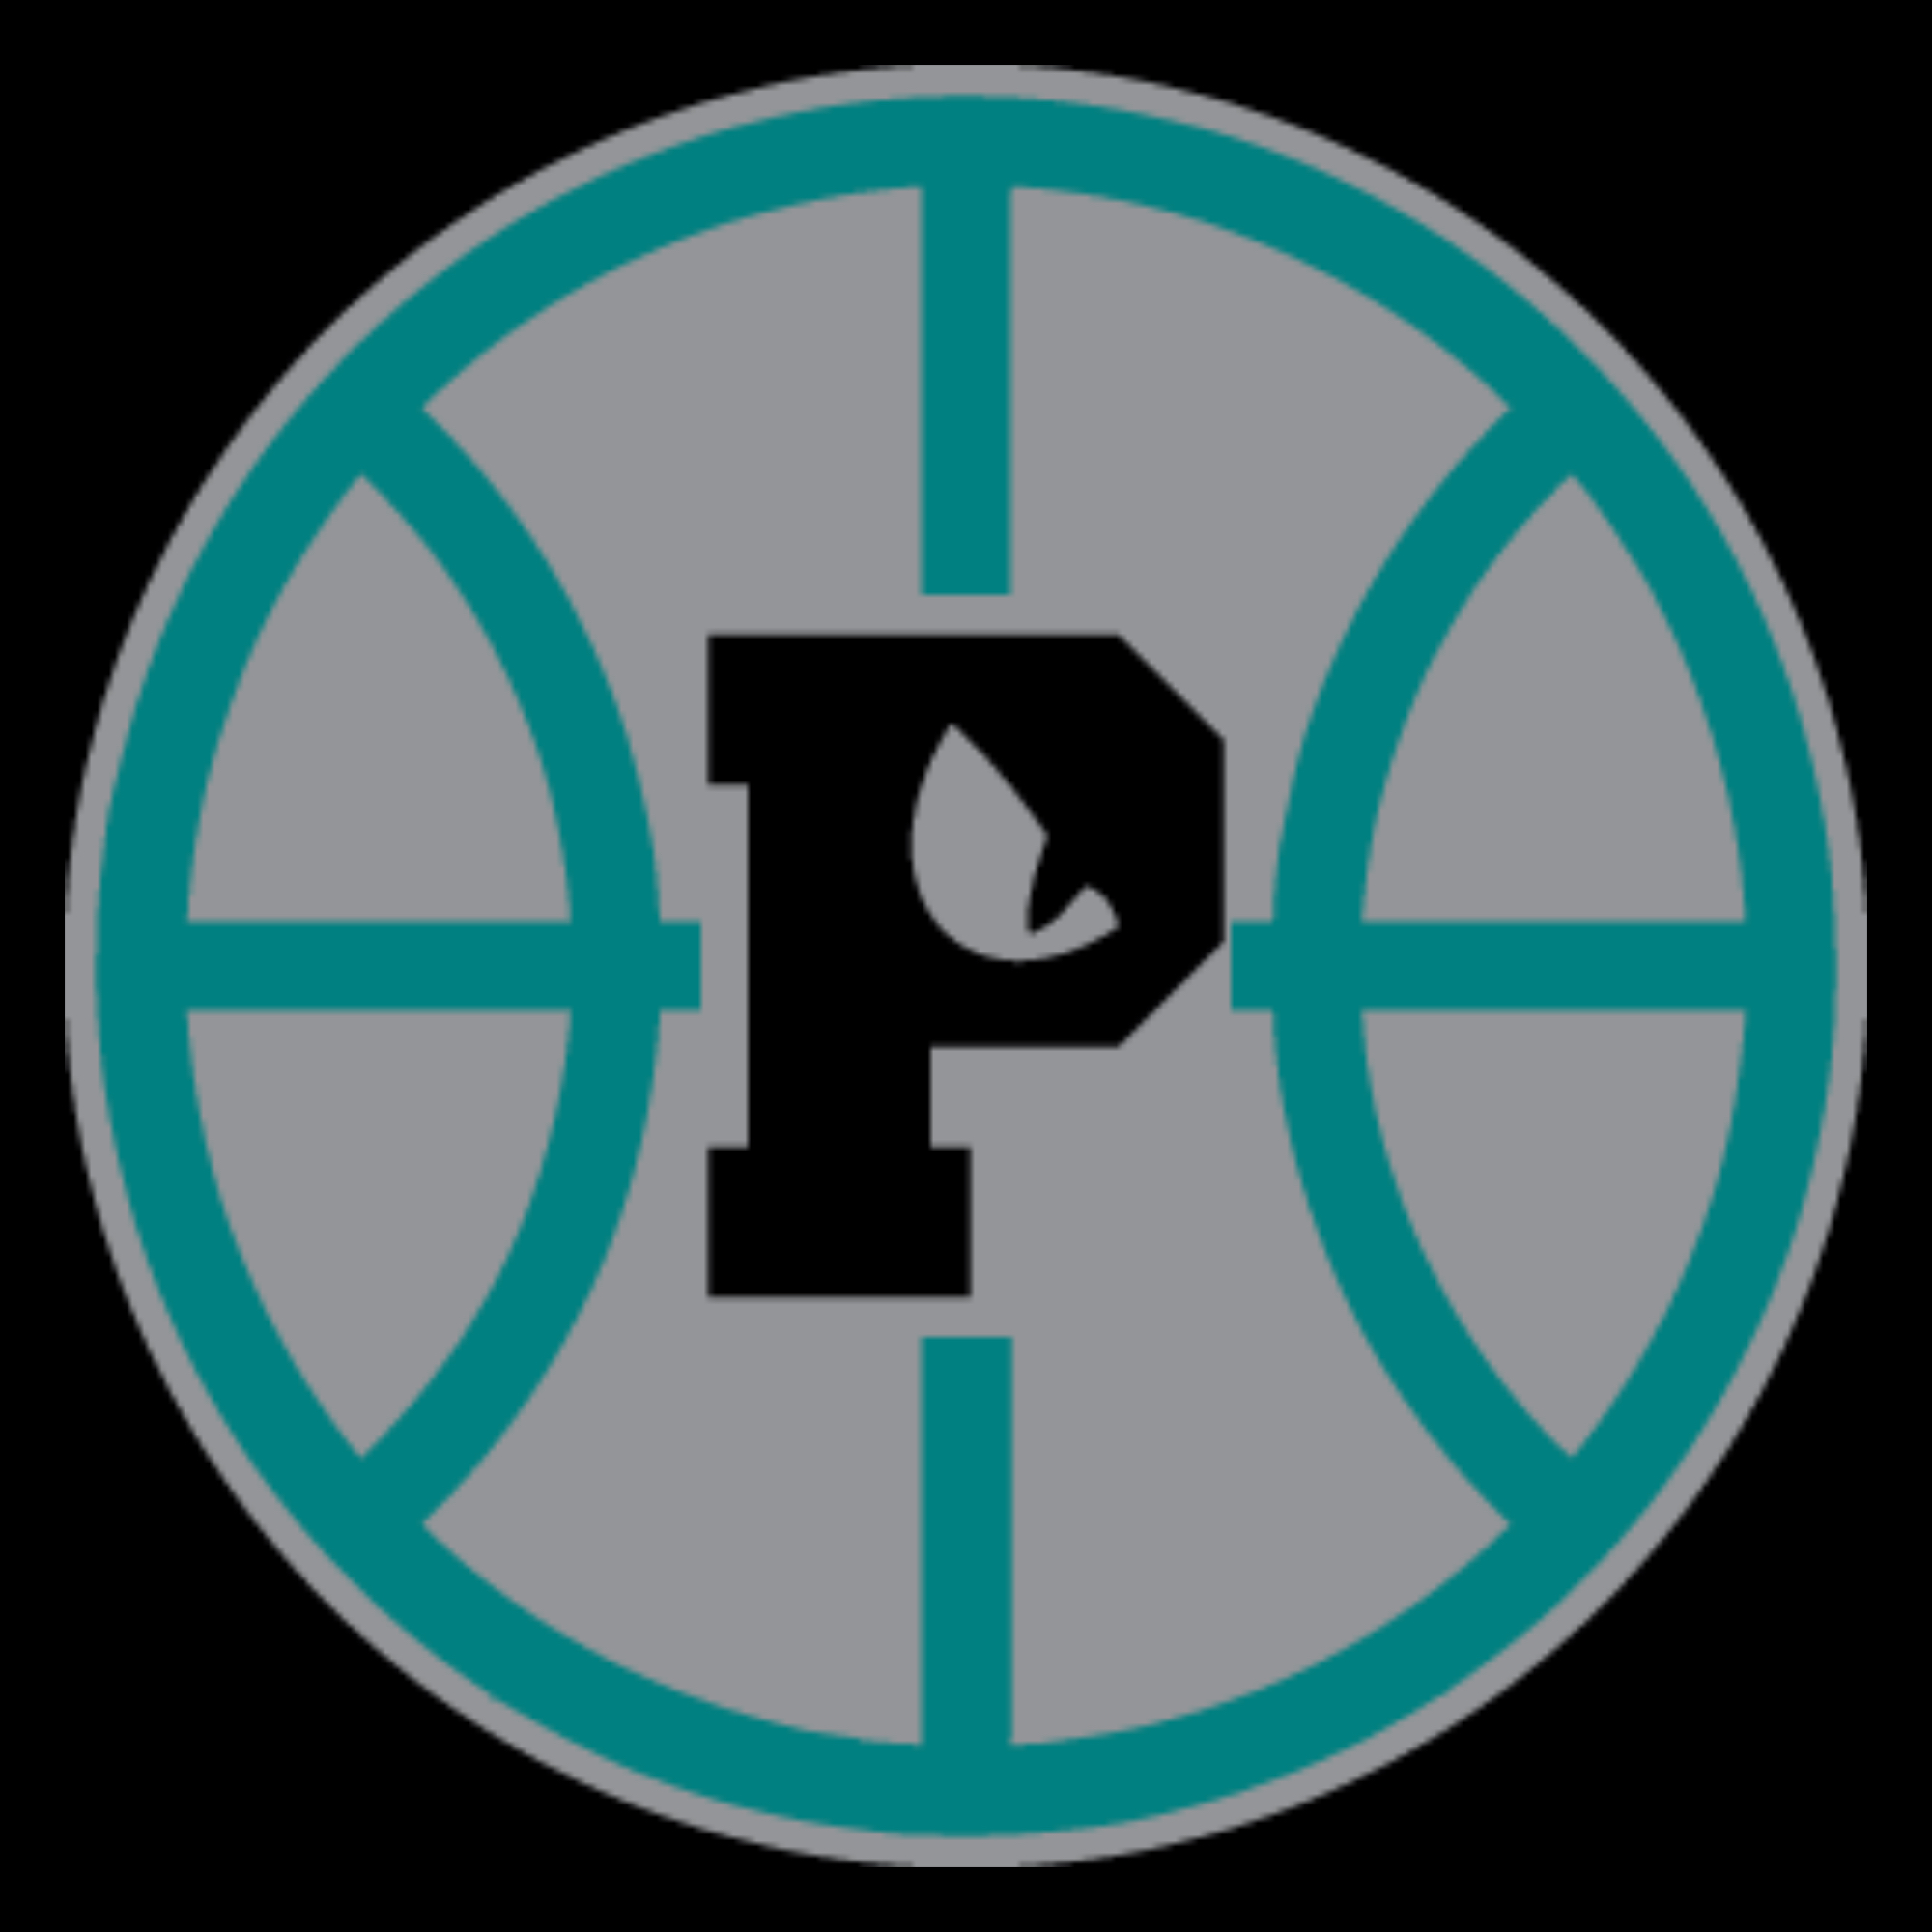 The official logo of San Diego Piranhas